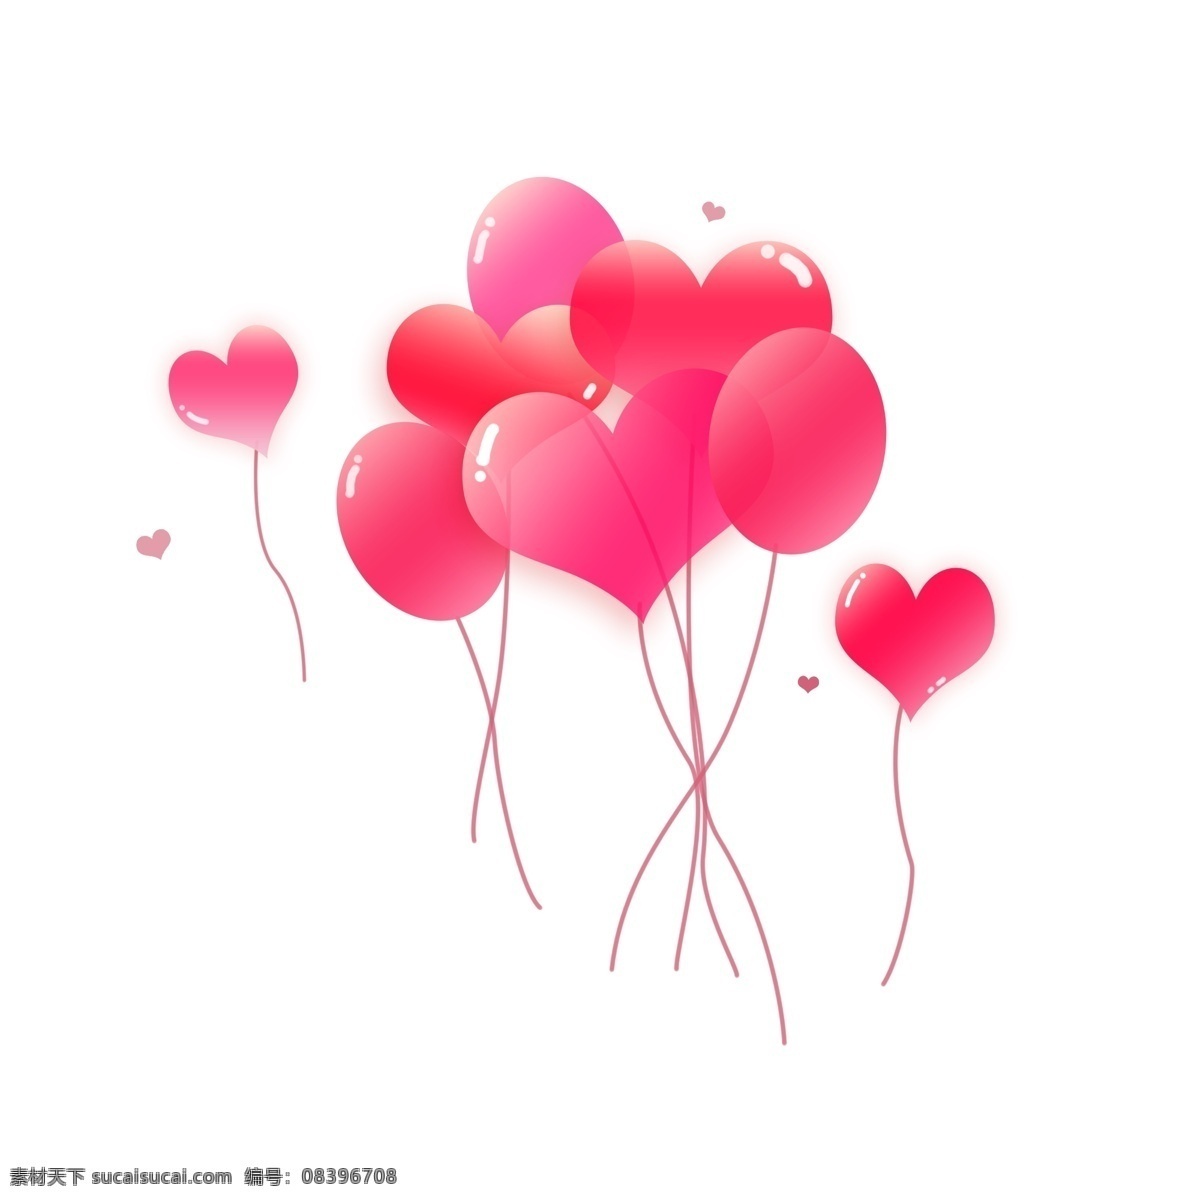 情人节 粉色 浪漫 气球 节日 爱心气球 情人节元素